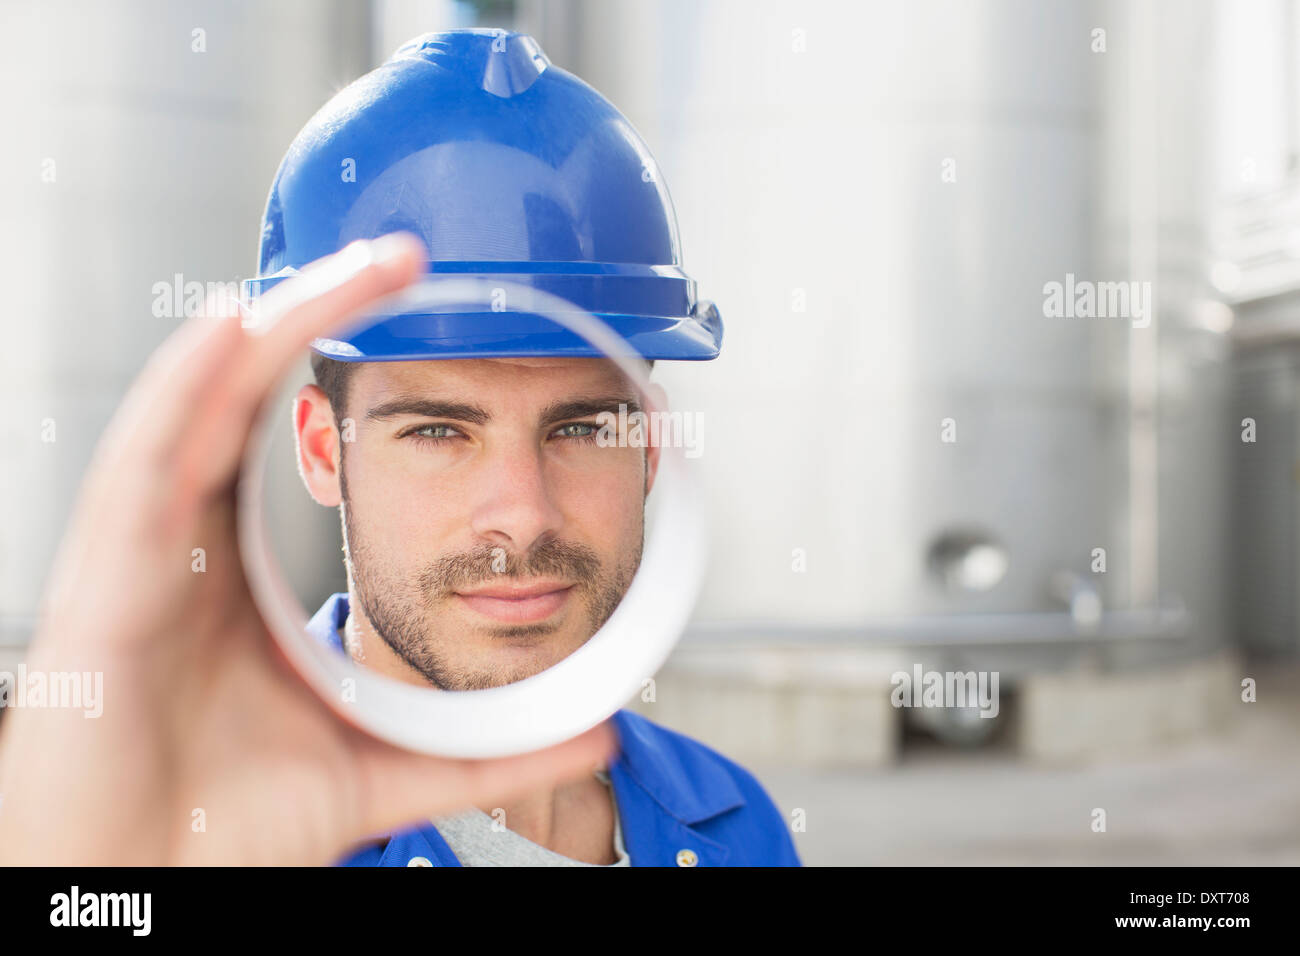 Retrato de trabajador mirando a través del tubo de metal Foto de stock